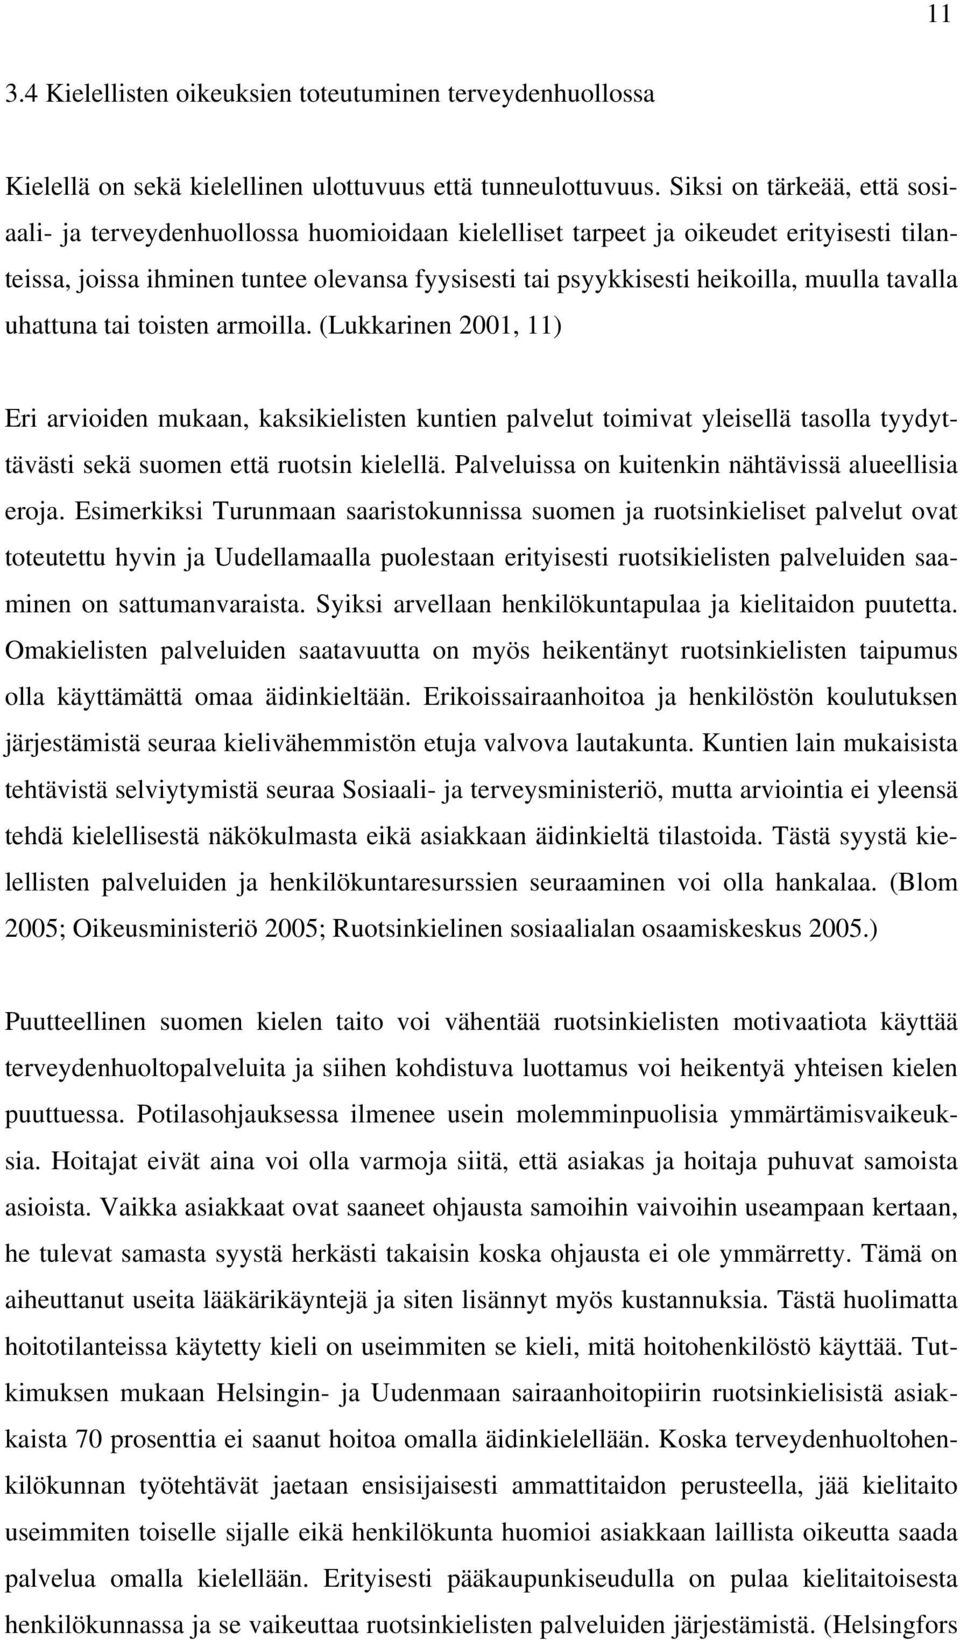 muulla tavalla uhattuna tai toisten armoilla. (Lukkarinen 2001, 11) Eri arvioiden mukaan, kaksikielisten kuntien palvelut toimivat yleisellä tasolla tyydyttävästi sekä suomen että ruotsin kielellä.